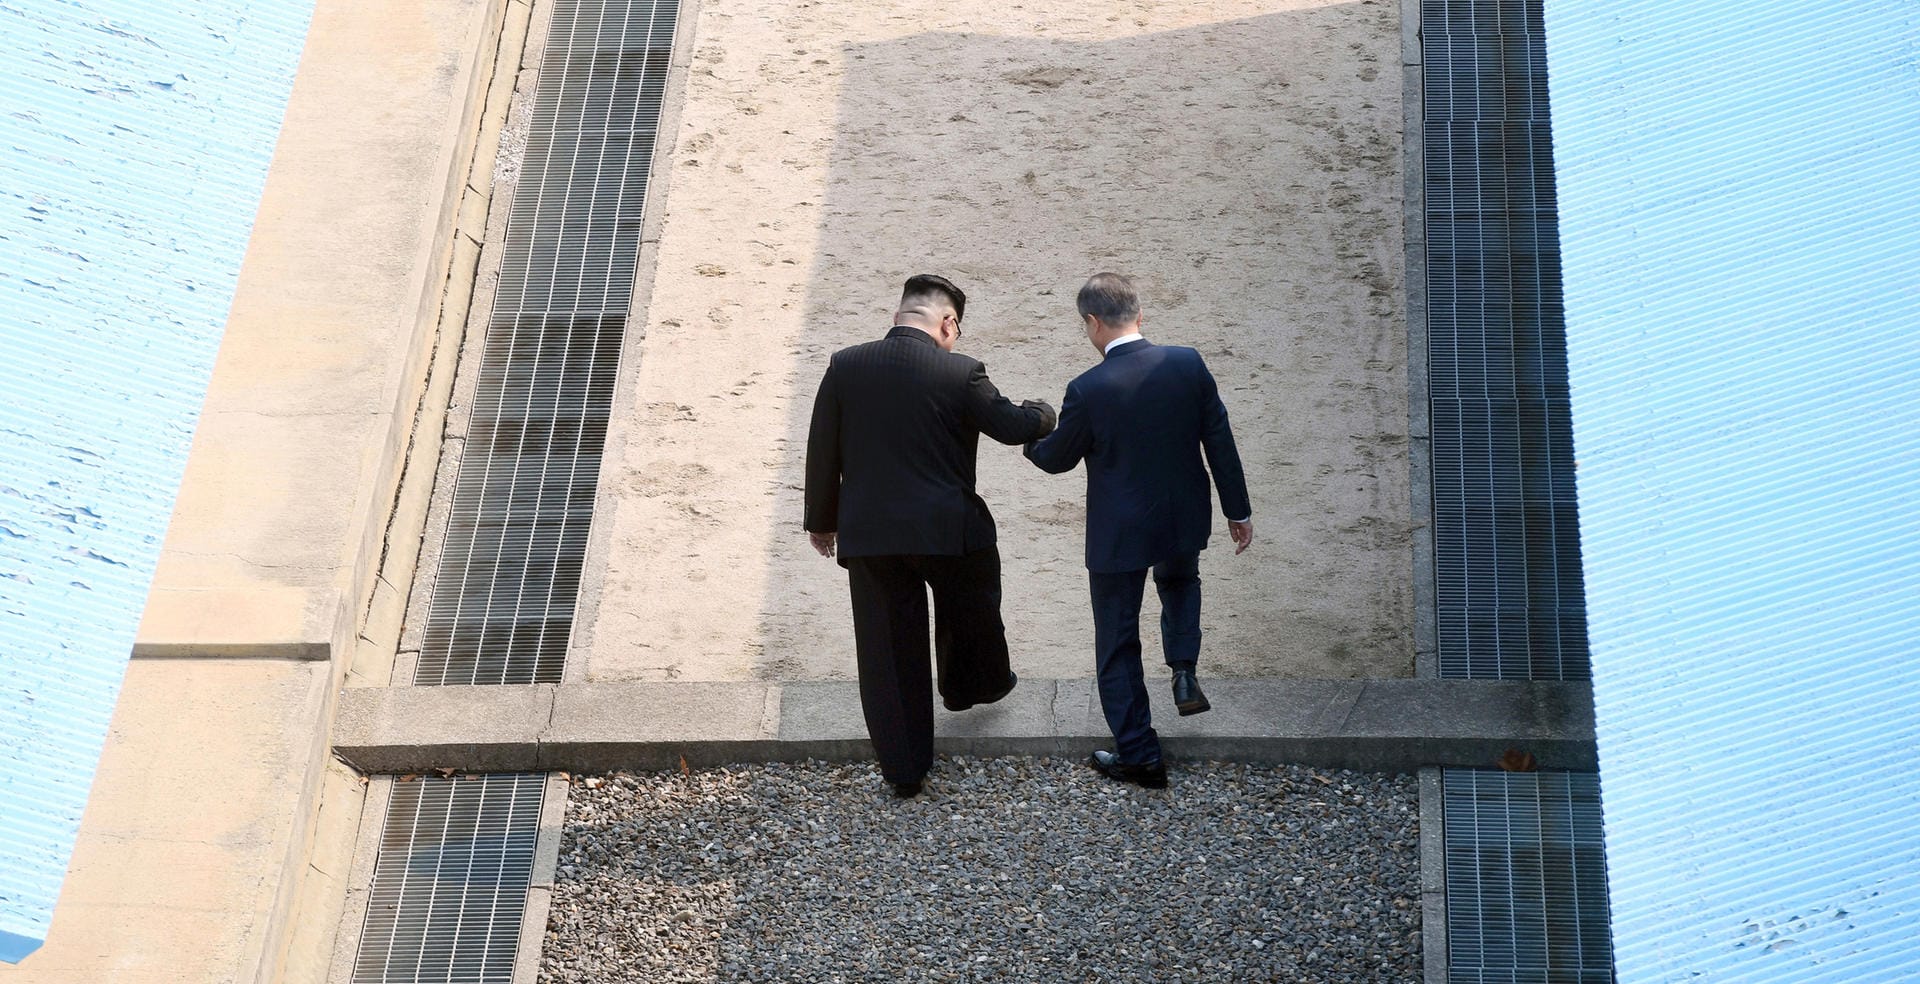 Spontan forderte Kim den südkoreanischen Präsidenten auf, seinerseits die Betonschwelle im Boden, die die Linie kennzeichnet, auch nach Norden zu überqueren. Moon betrat damit erstmals nordkoreanischen Boden, was vorher nicht erwartet worden war.